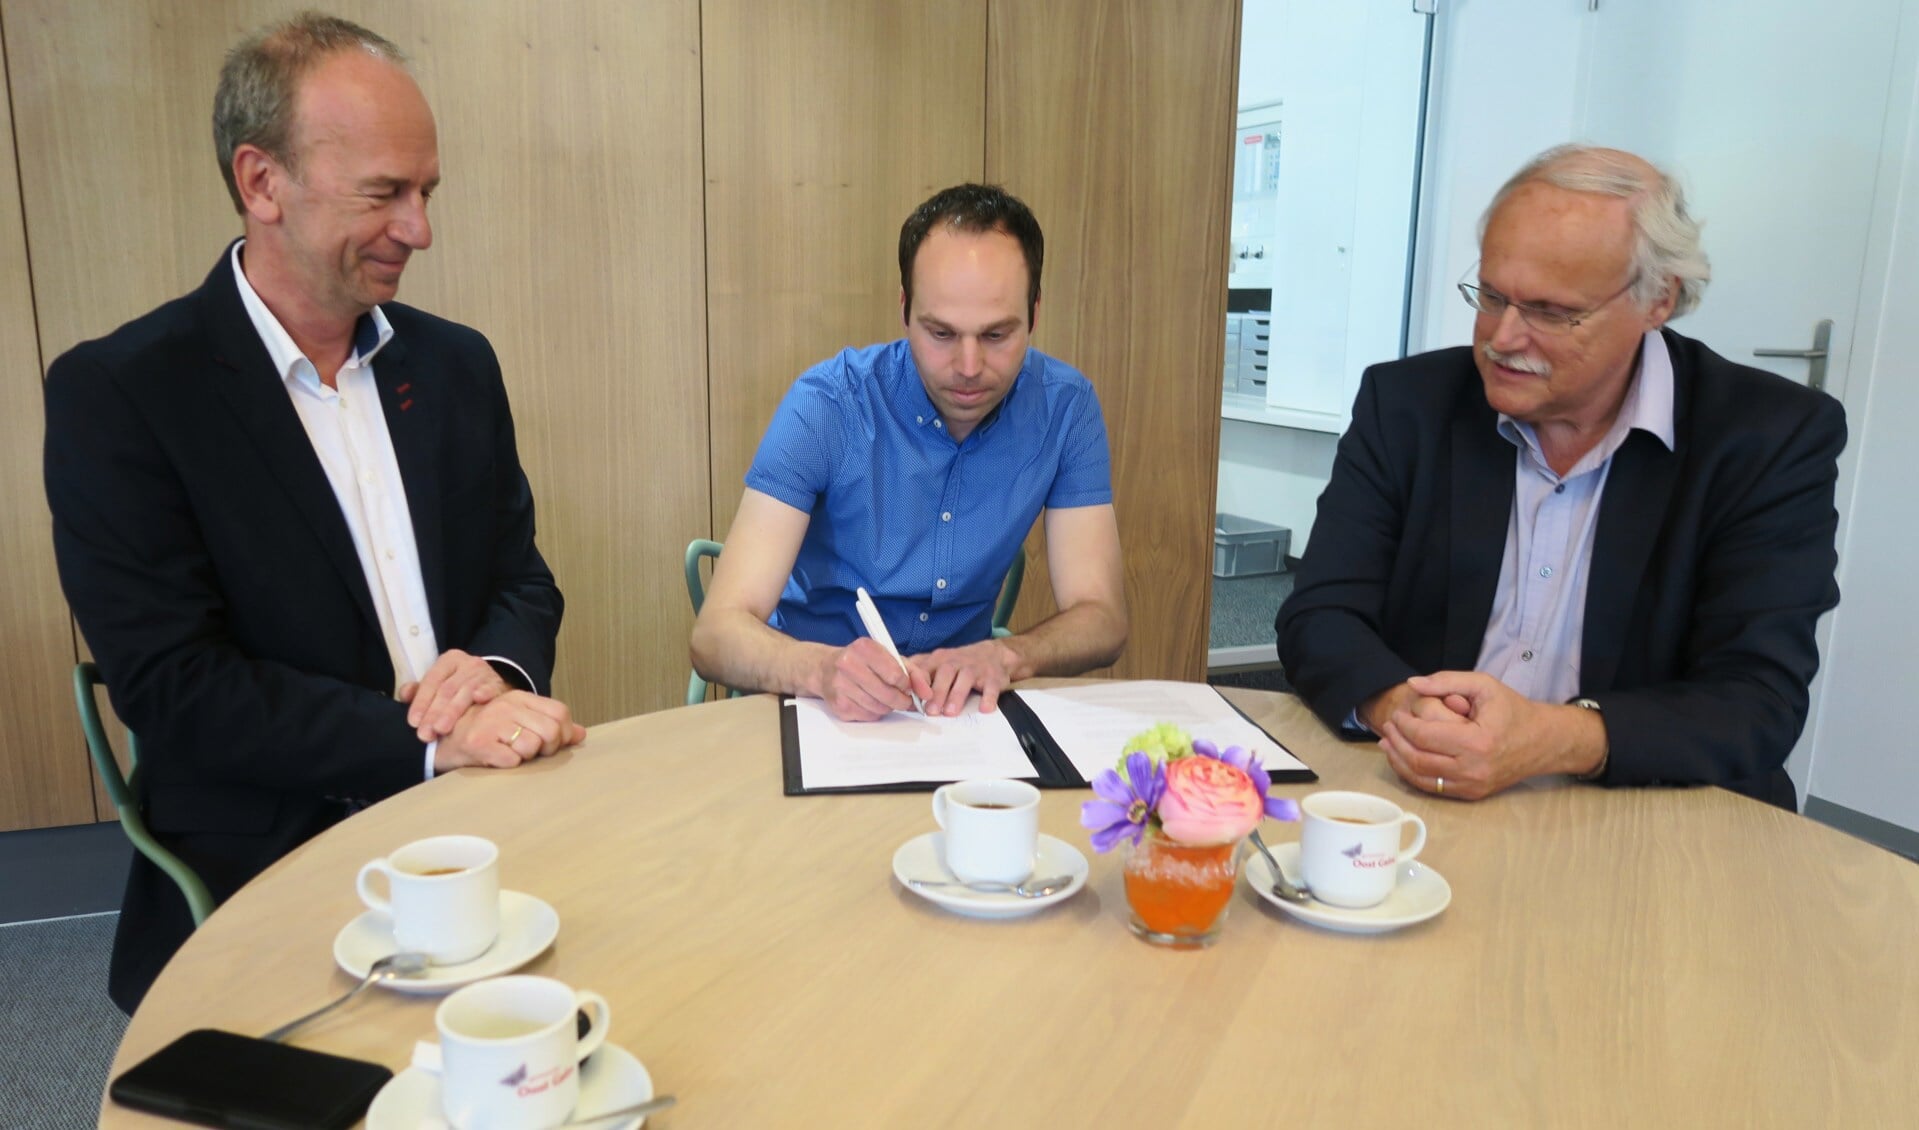 De ondertekening van de intentieverklaring met vlnr Arno Lentfert, Bob Lageschaar en René Hoijtink. Foto: Theo Huijskes